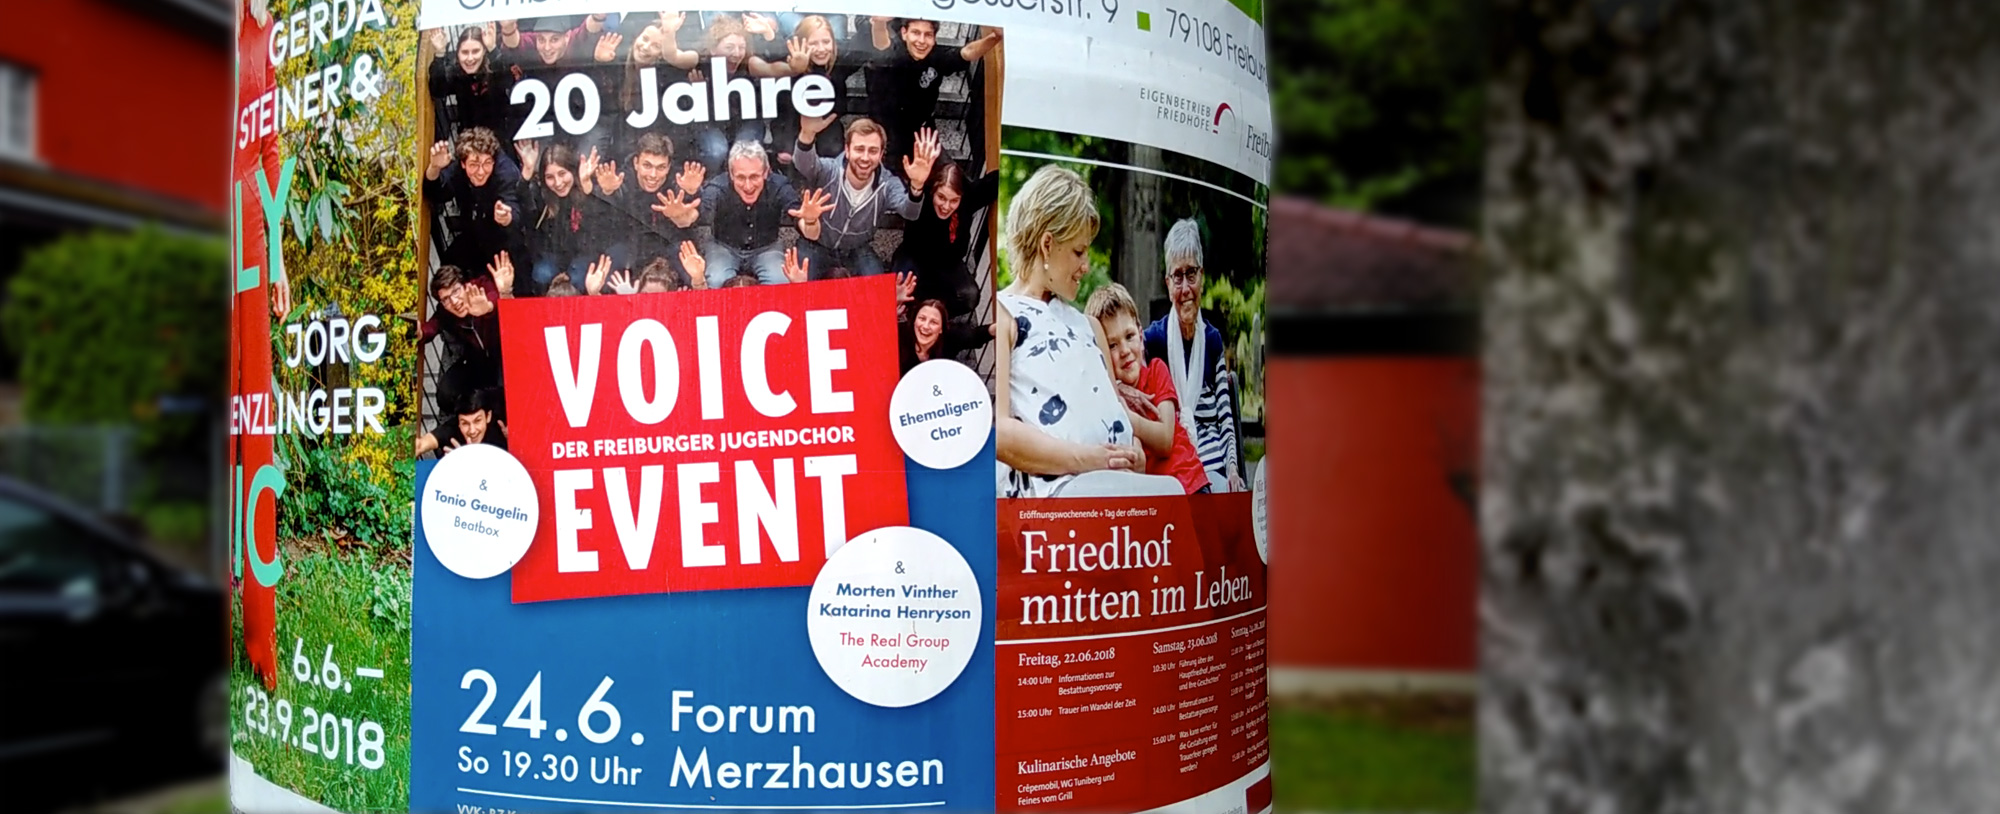 Plakat 20 Jahre Voice Event